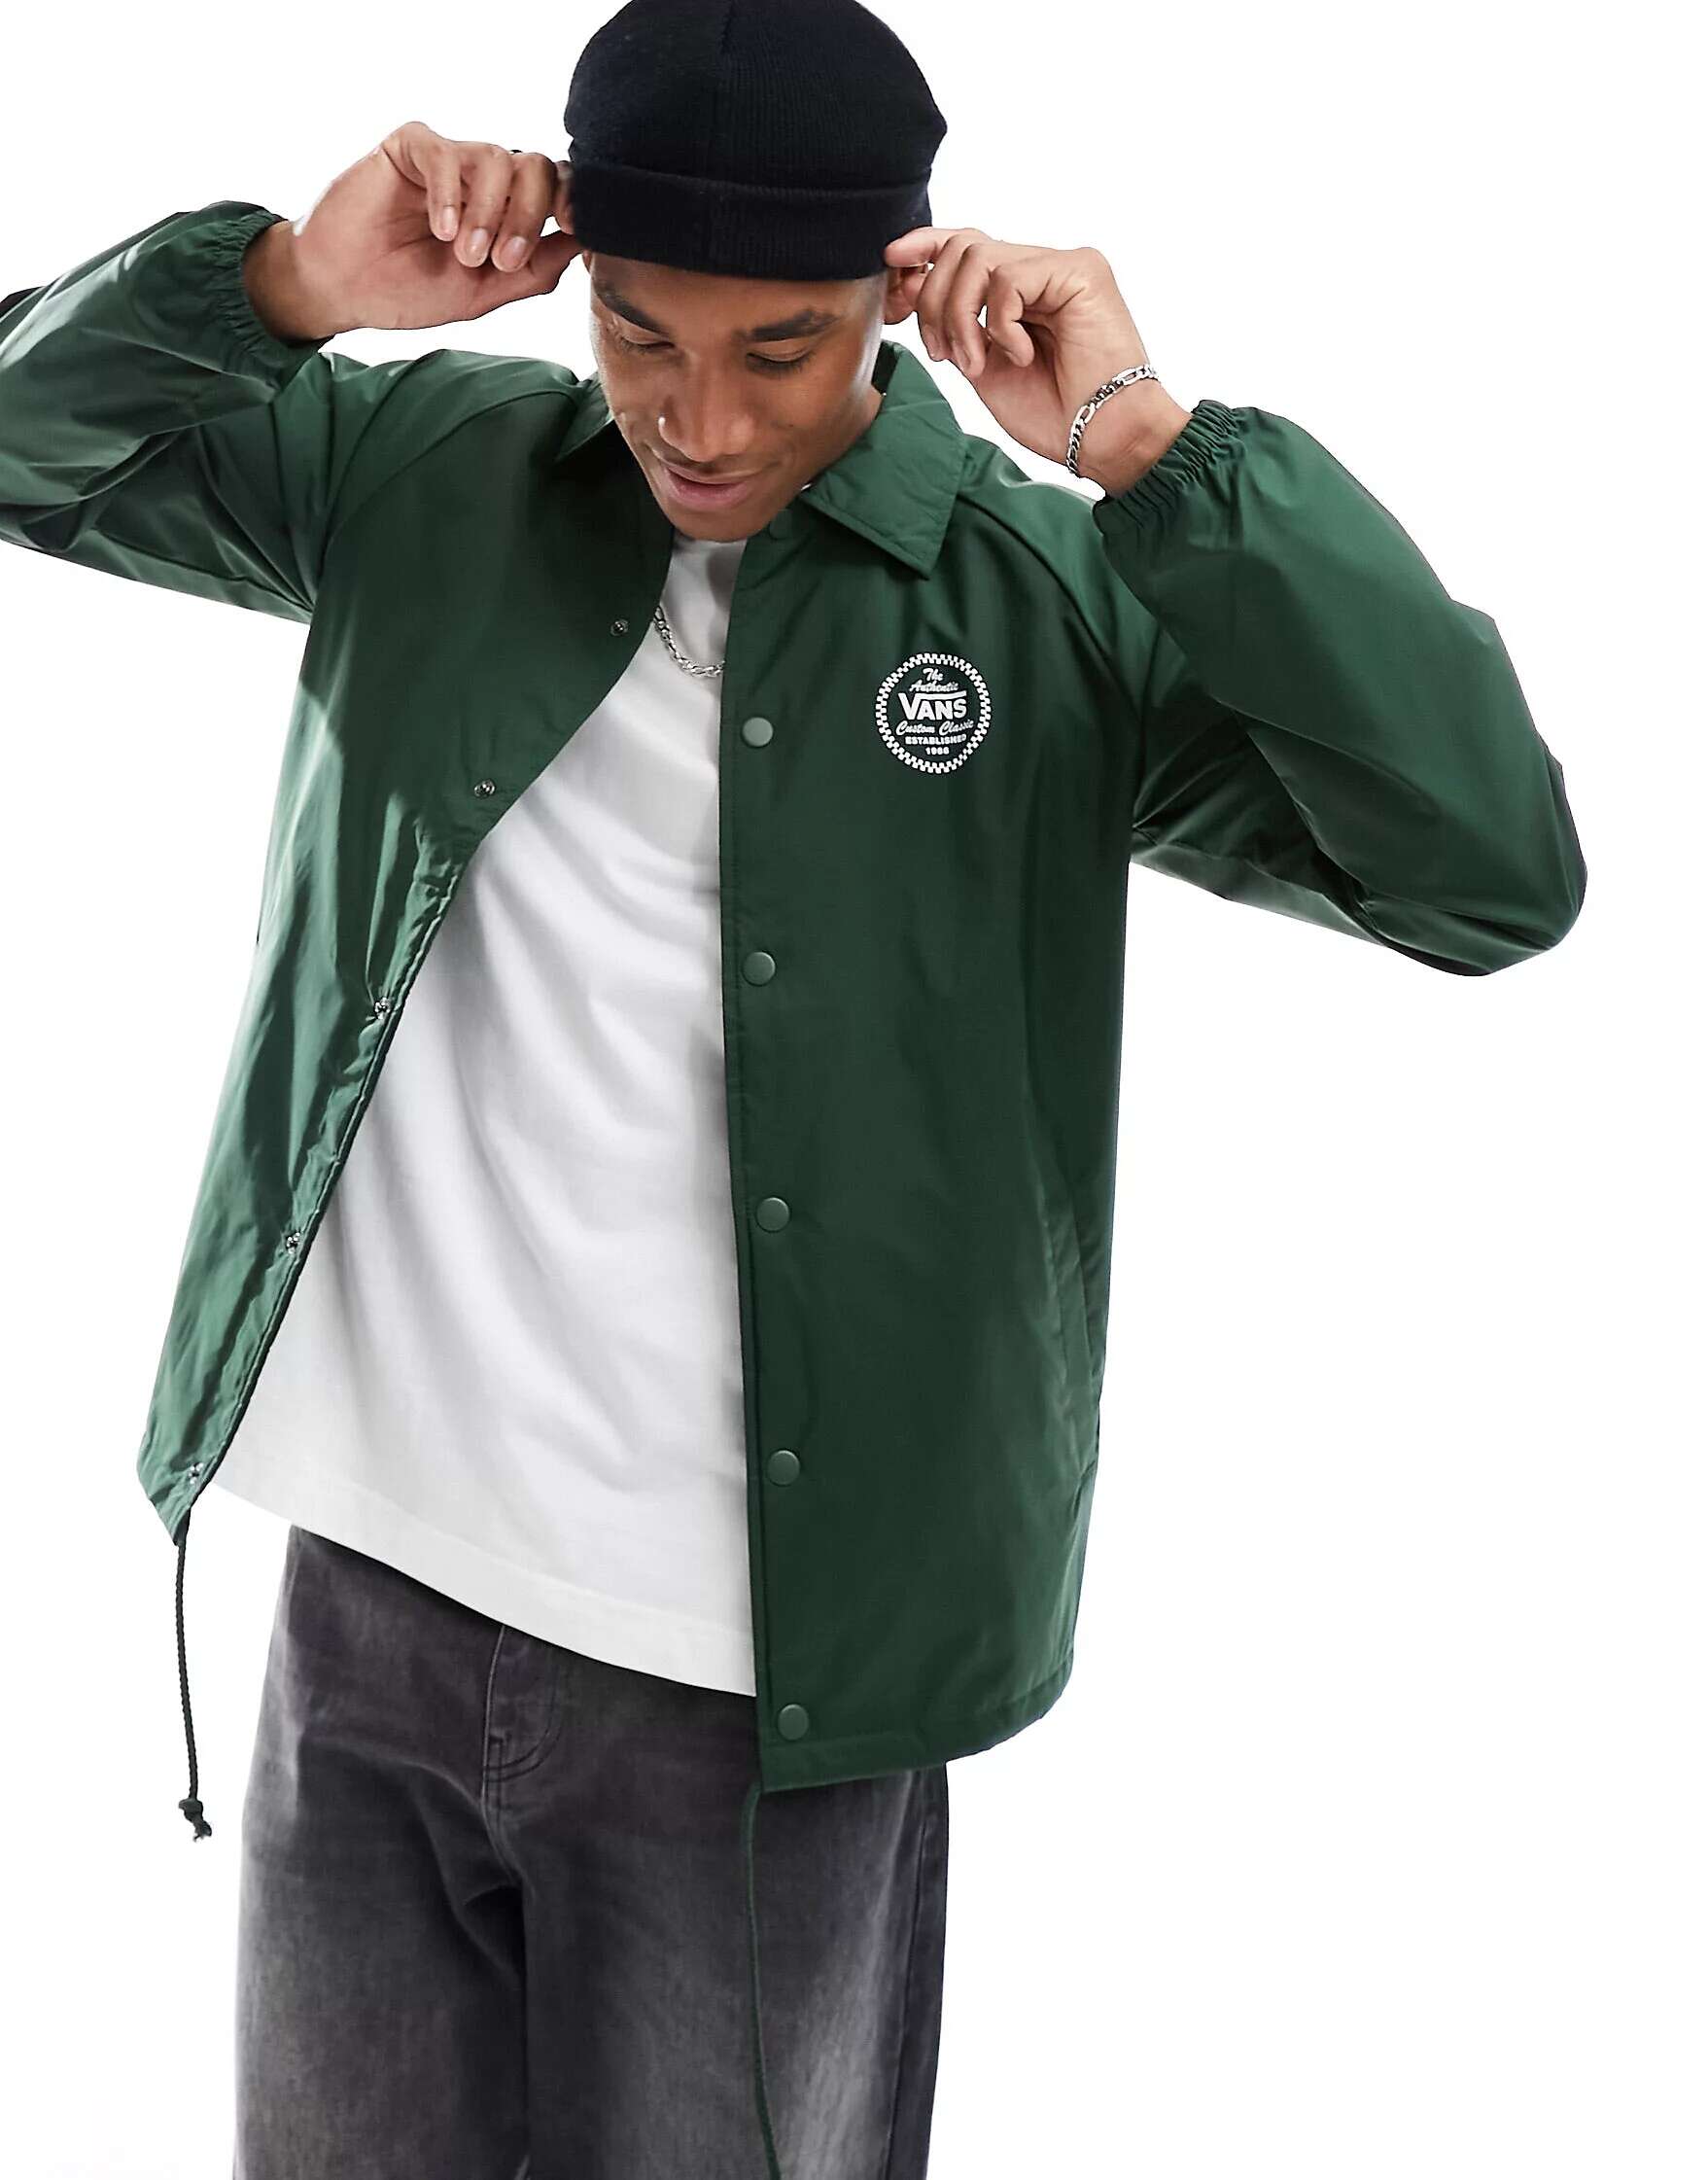 Зеленая спортивная куртка Vans Torrey